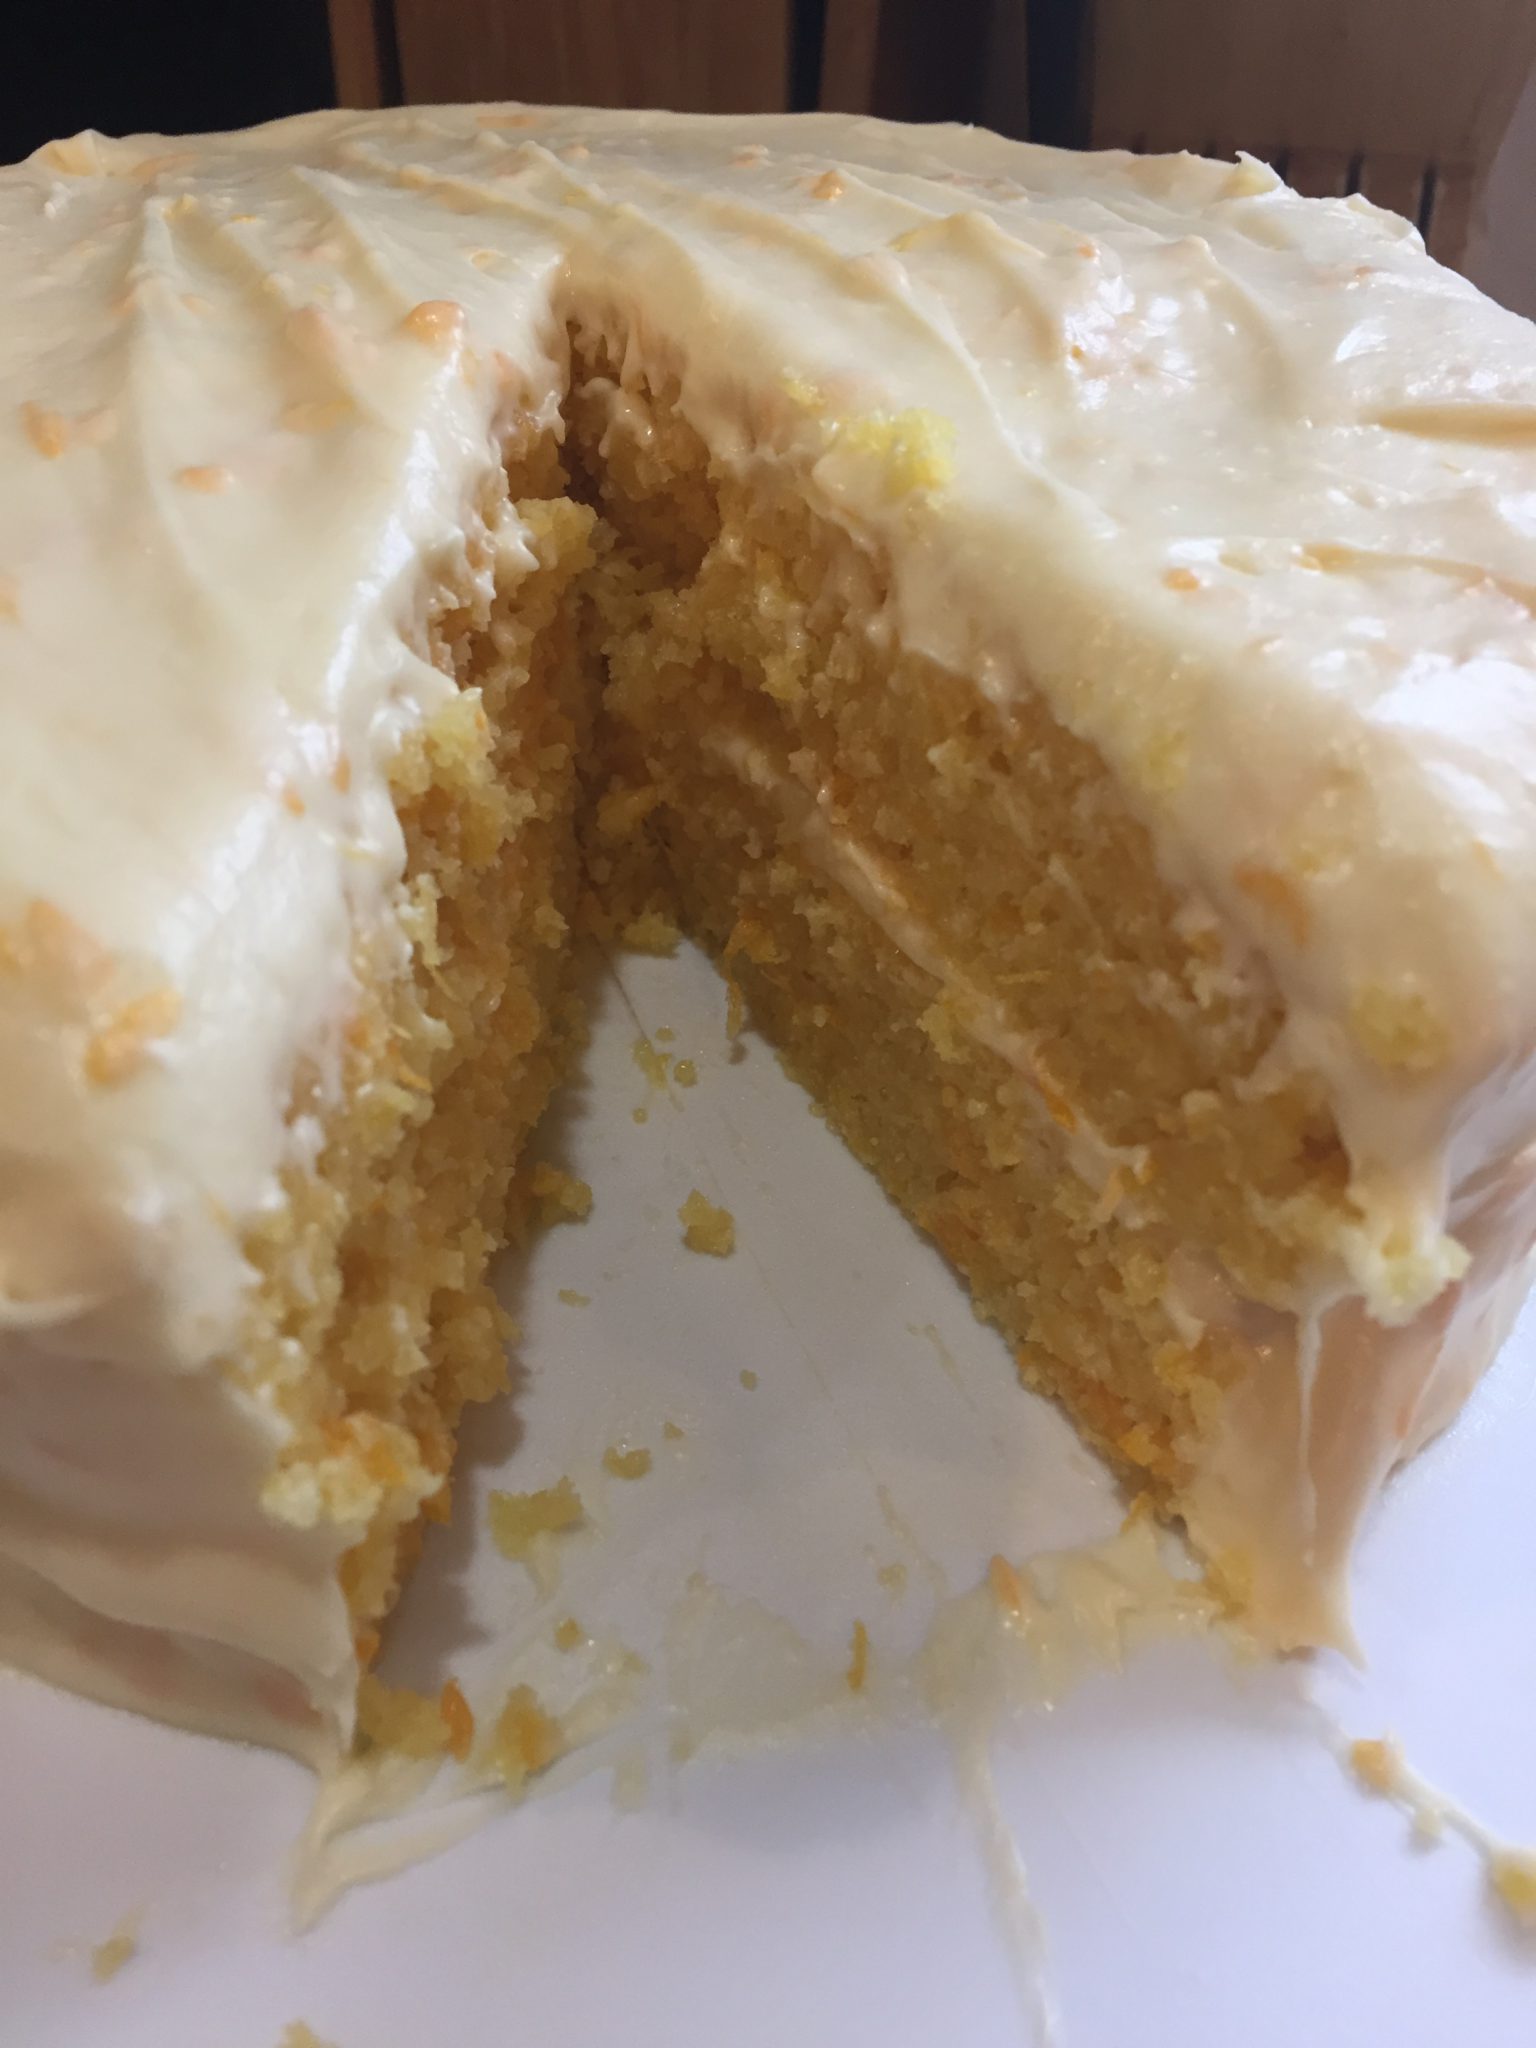 Mandarin Orange Cake from Scratch - Baking Naturally